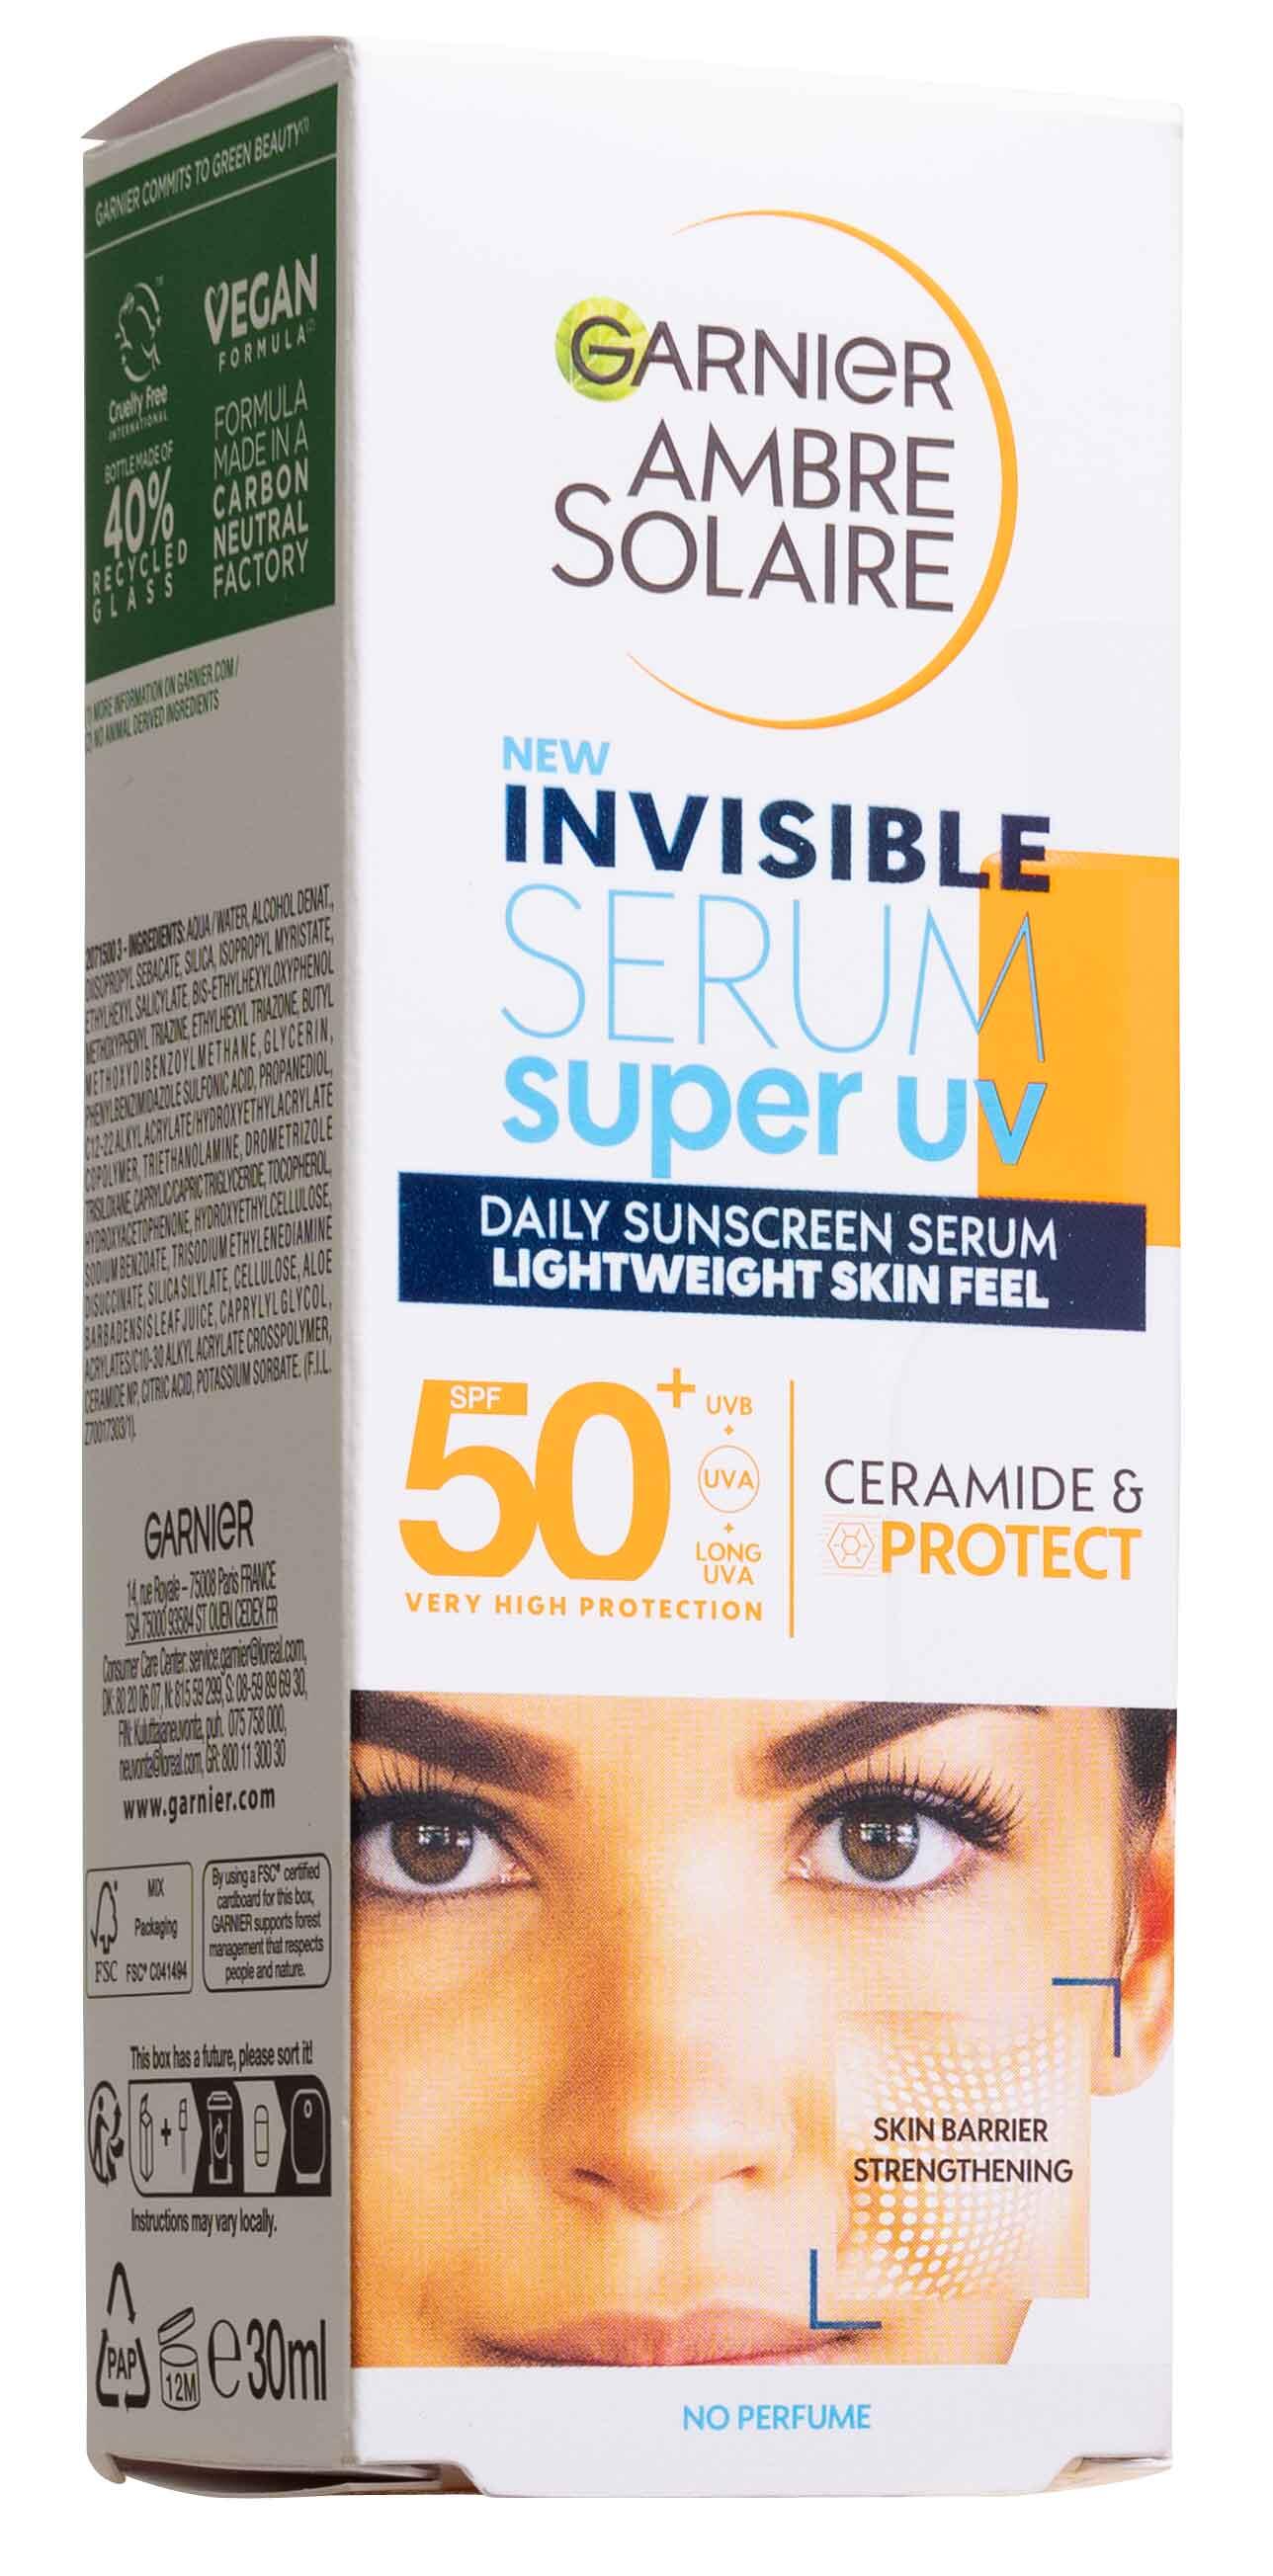 Invisible serum super uv SPF 50+ Garnier Ambre Solaire